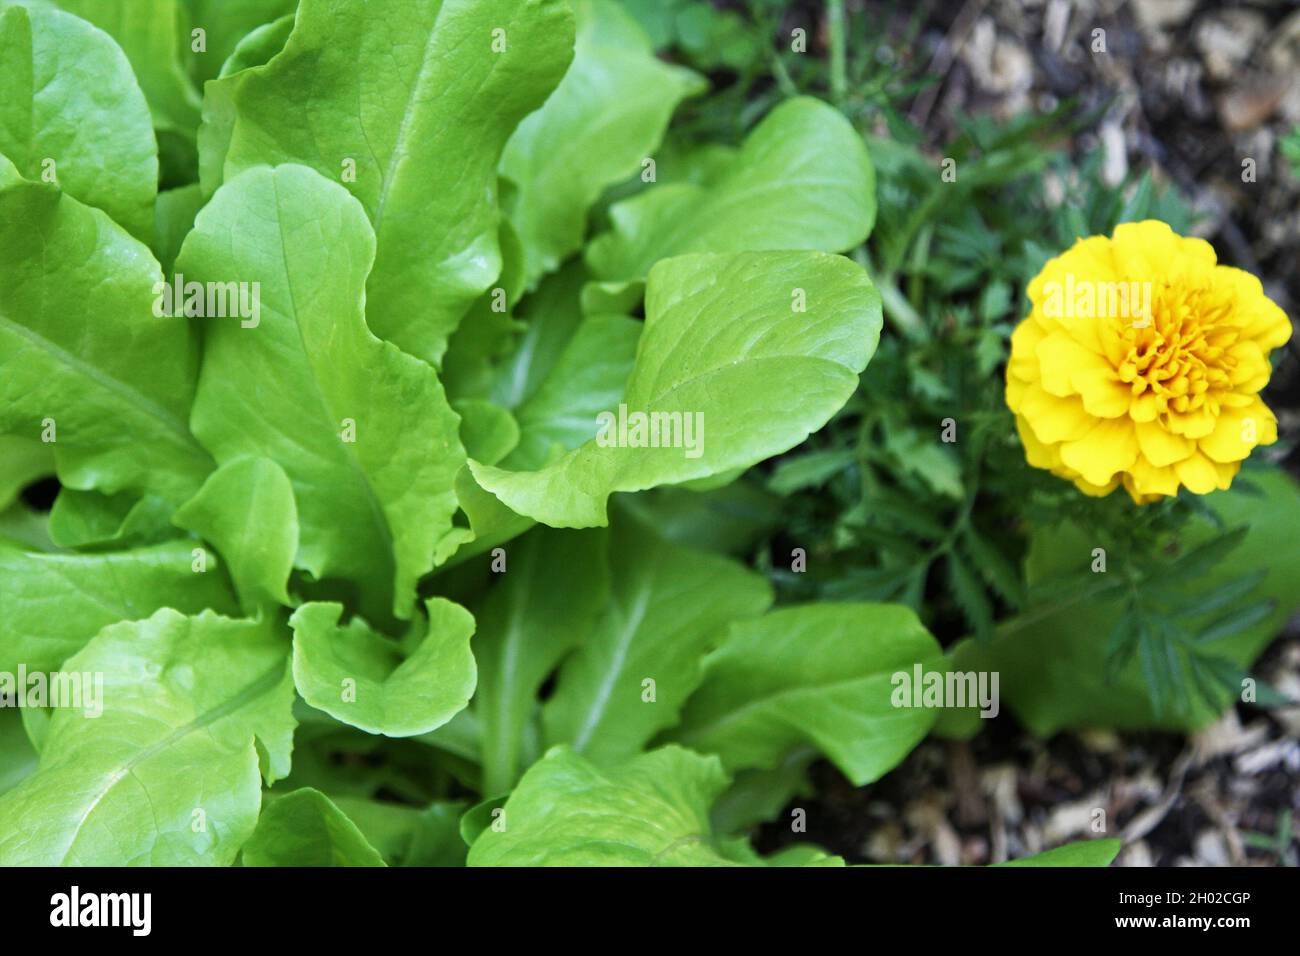 Salat wächst neben der gelben Ringelblume Stockfoto